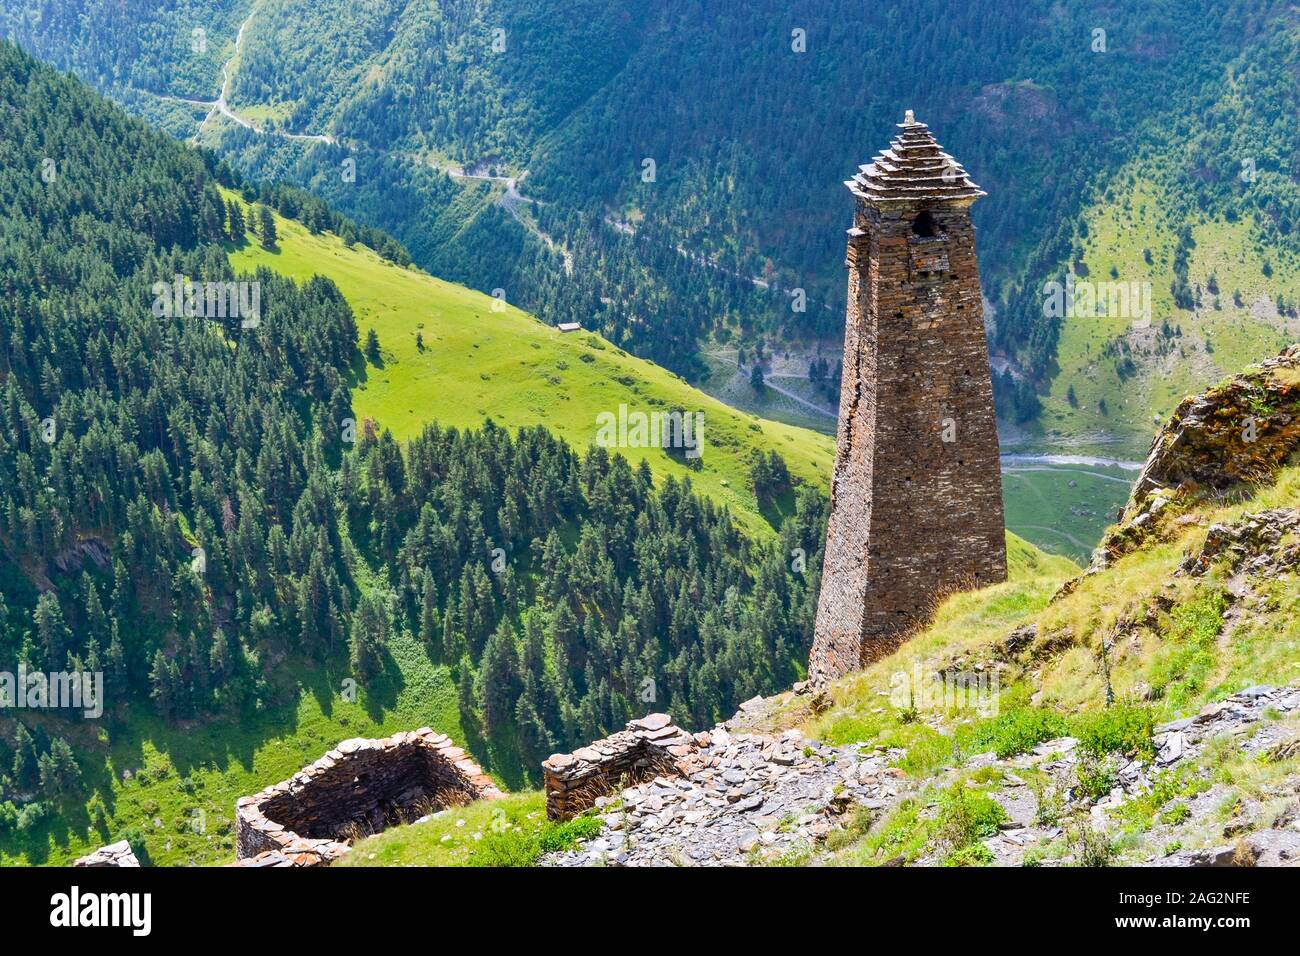 Tuschen, Georgien: einem antiken Turm in einem alpinen Dorf Kvavlo mit einem atemberaubenden Blick auf Berge und Wälder. Stockfoto